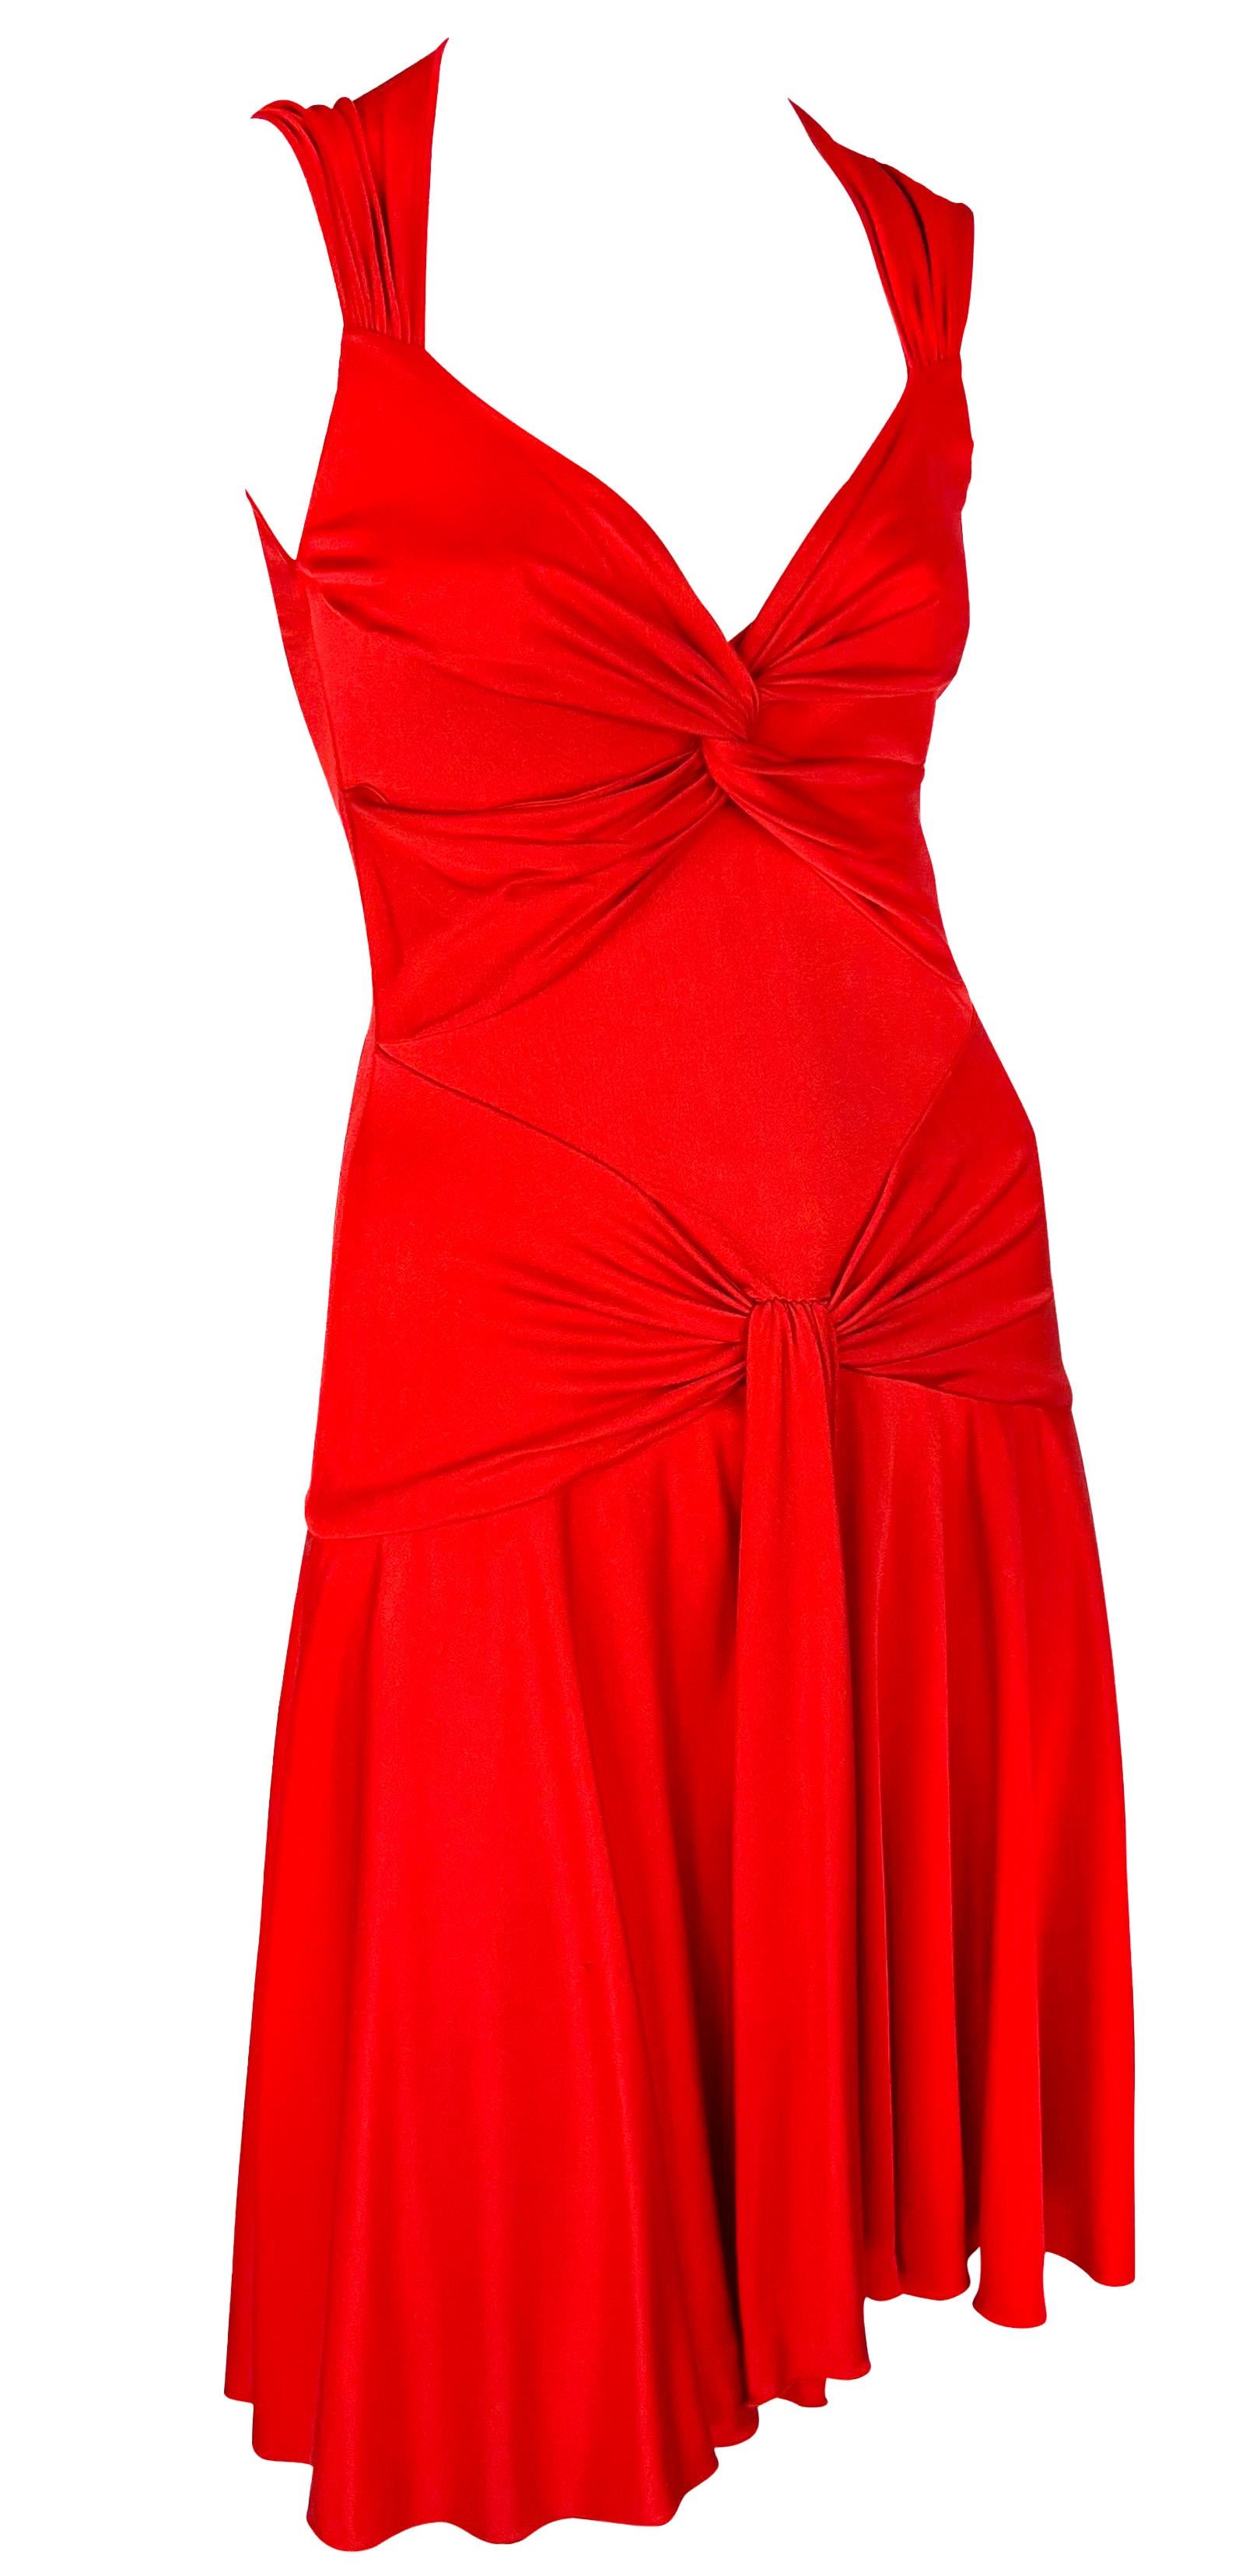 S/S 2004 Valentino Garavani Runway Red Silk Bodycon Flare Mini Dress For Sale 6